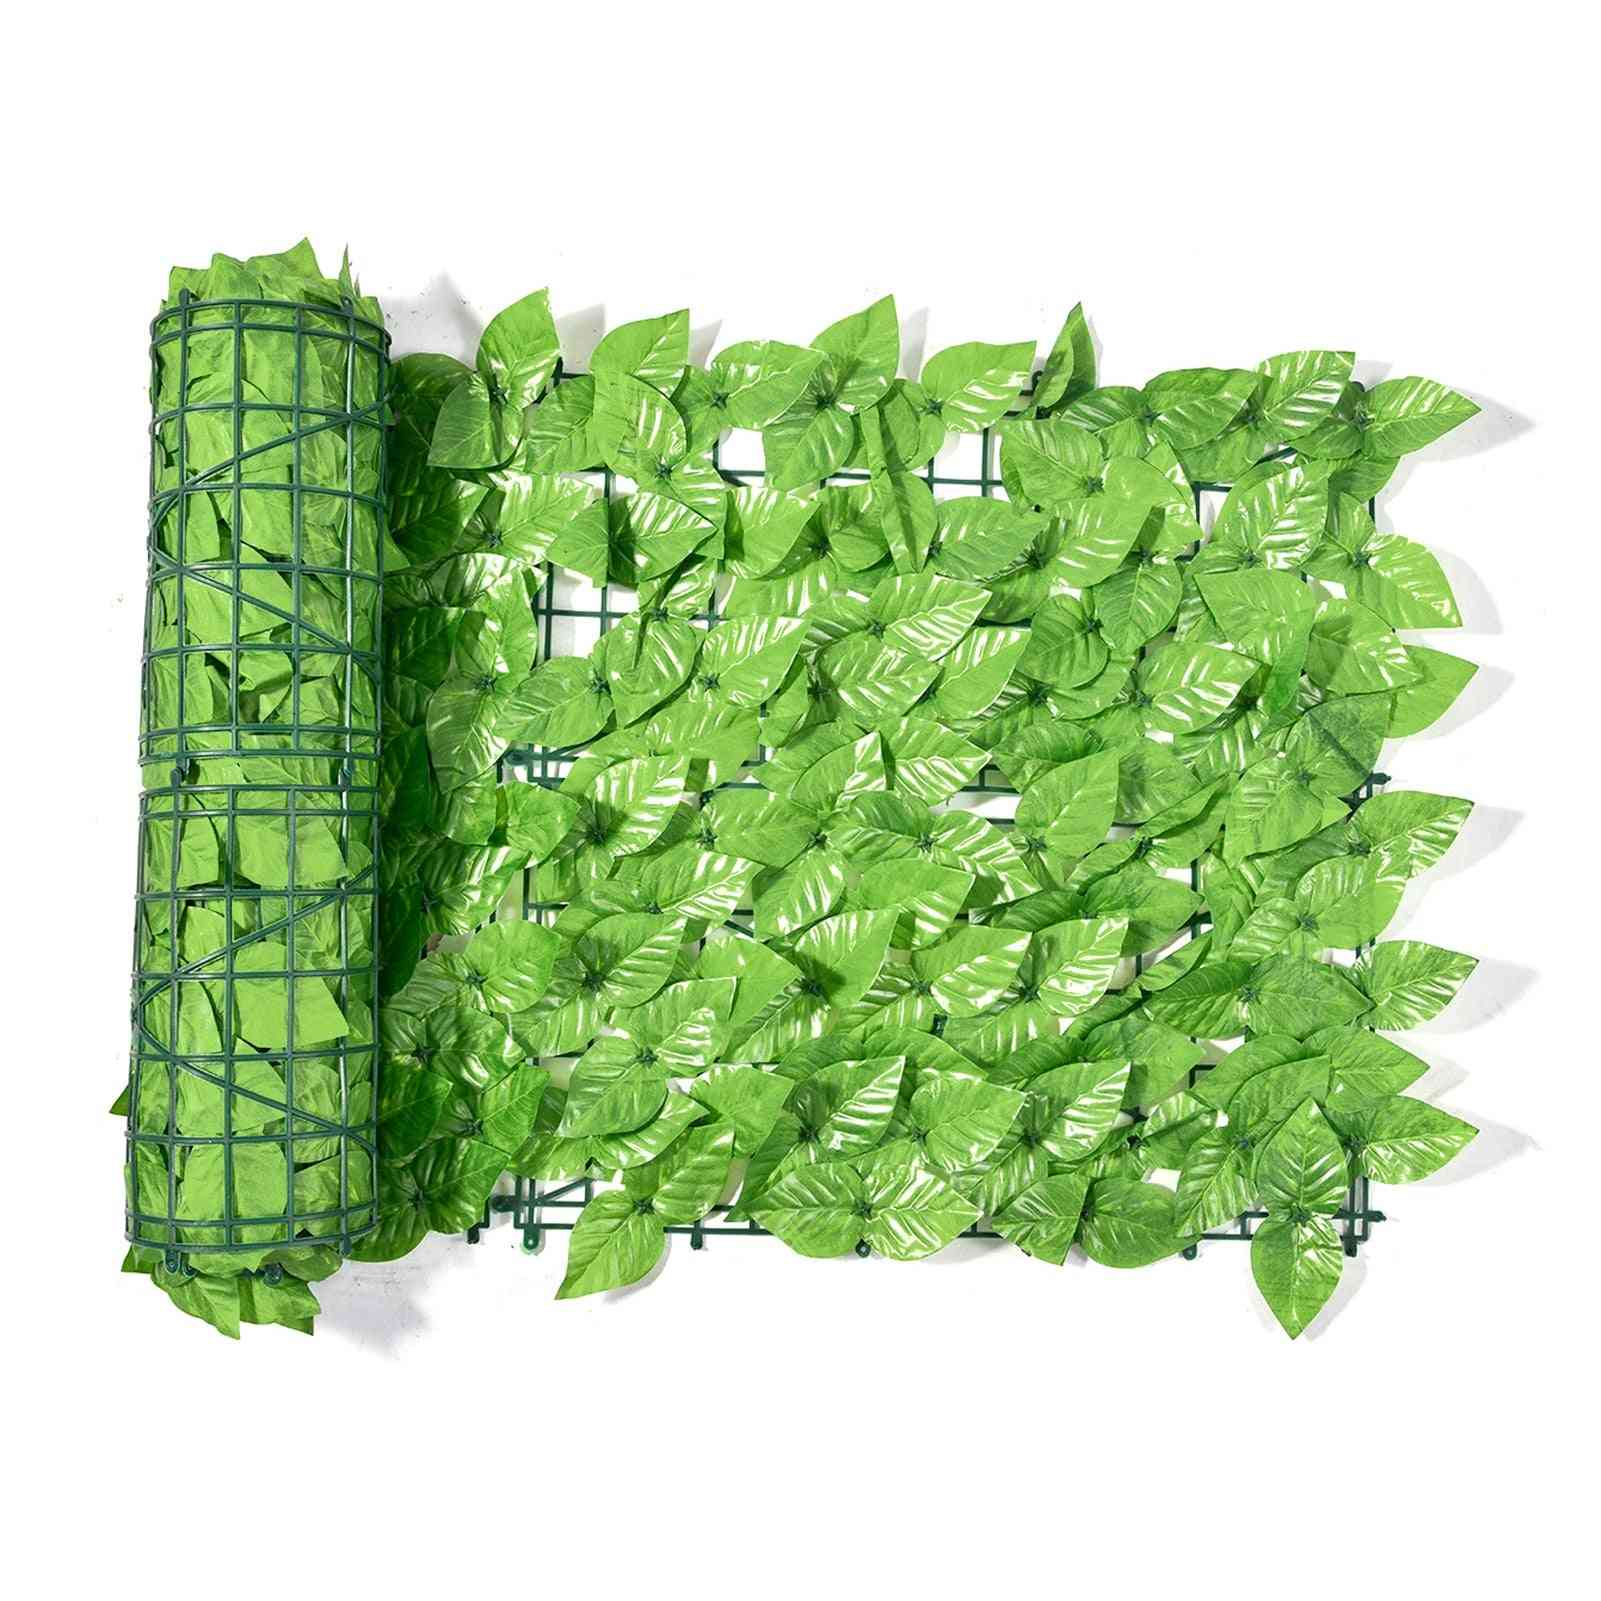 Kunstig vedbend hæk screening rulle grønne blade